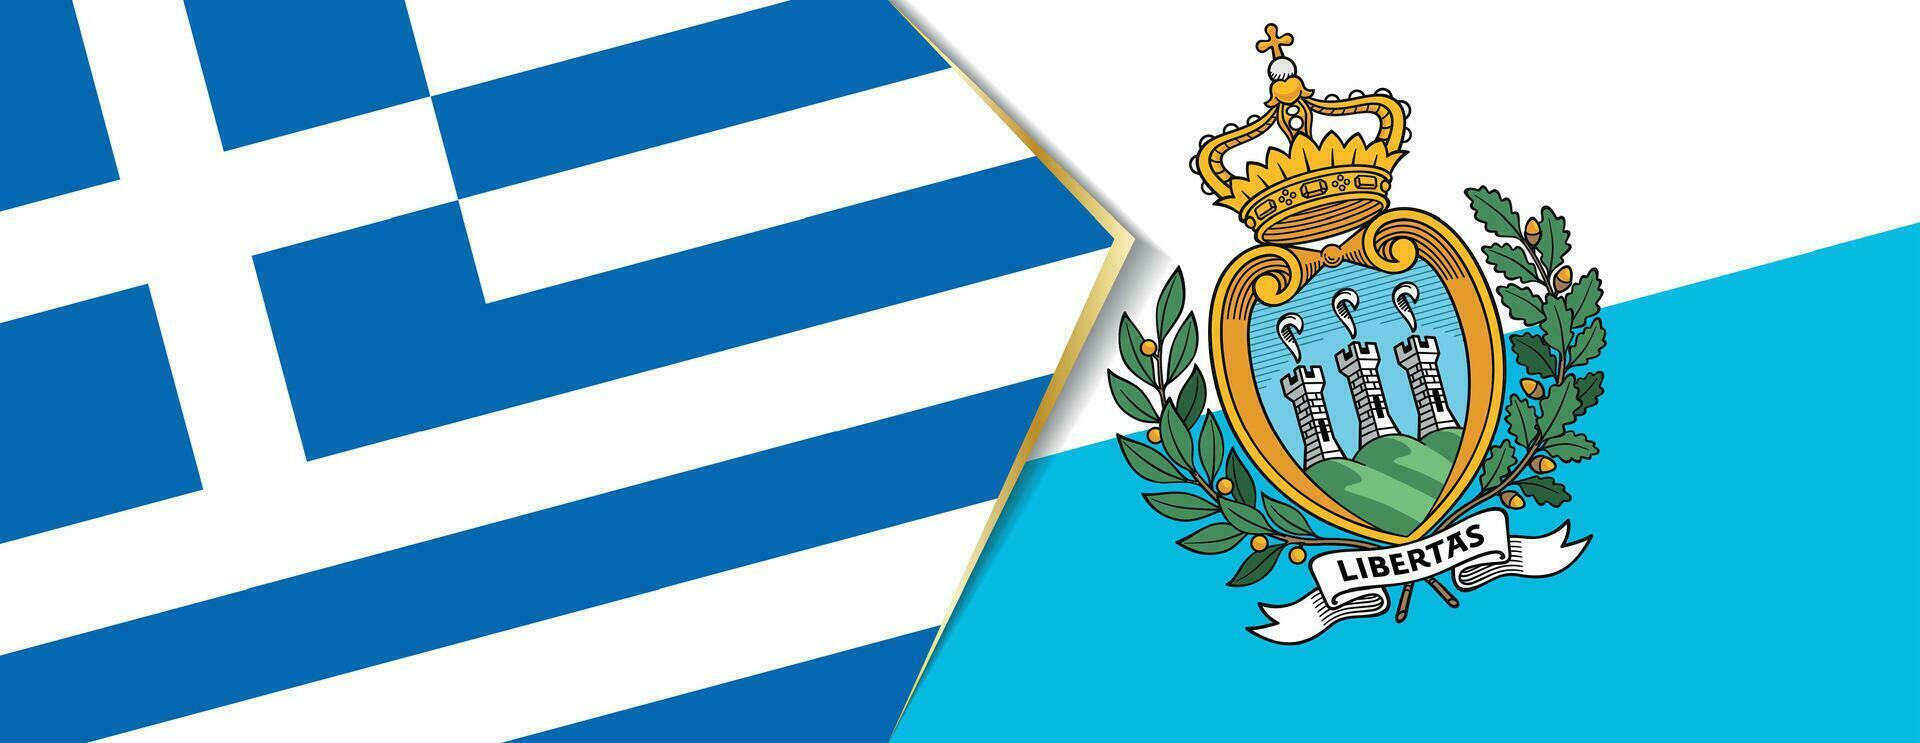 grekland och san marino flaggor, två vektor flaggor.